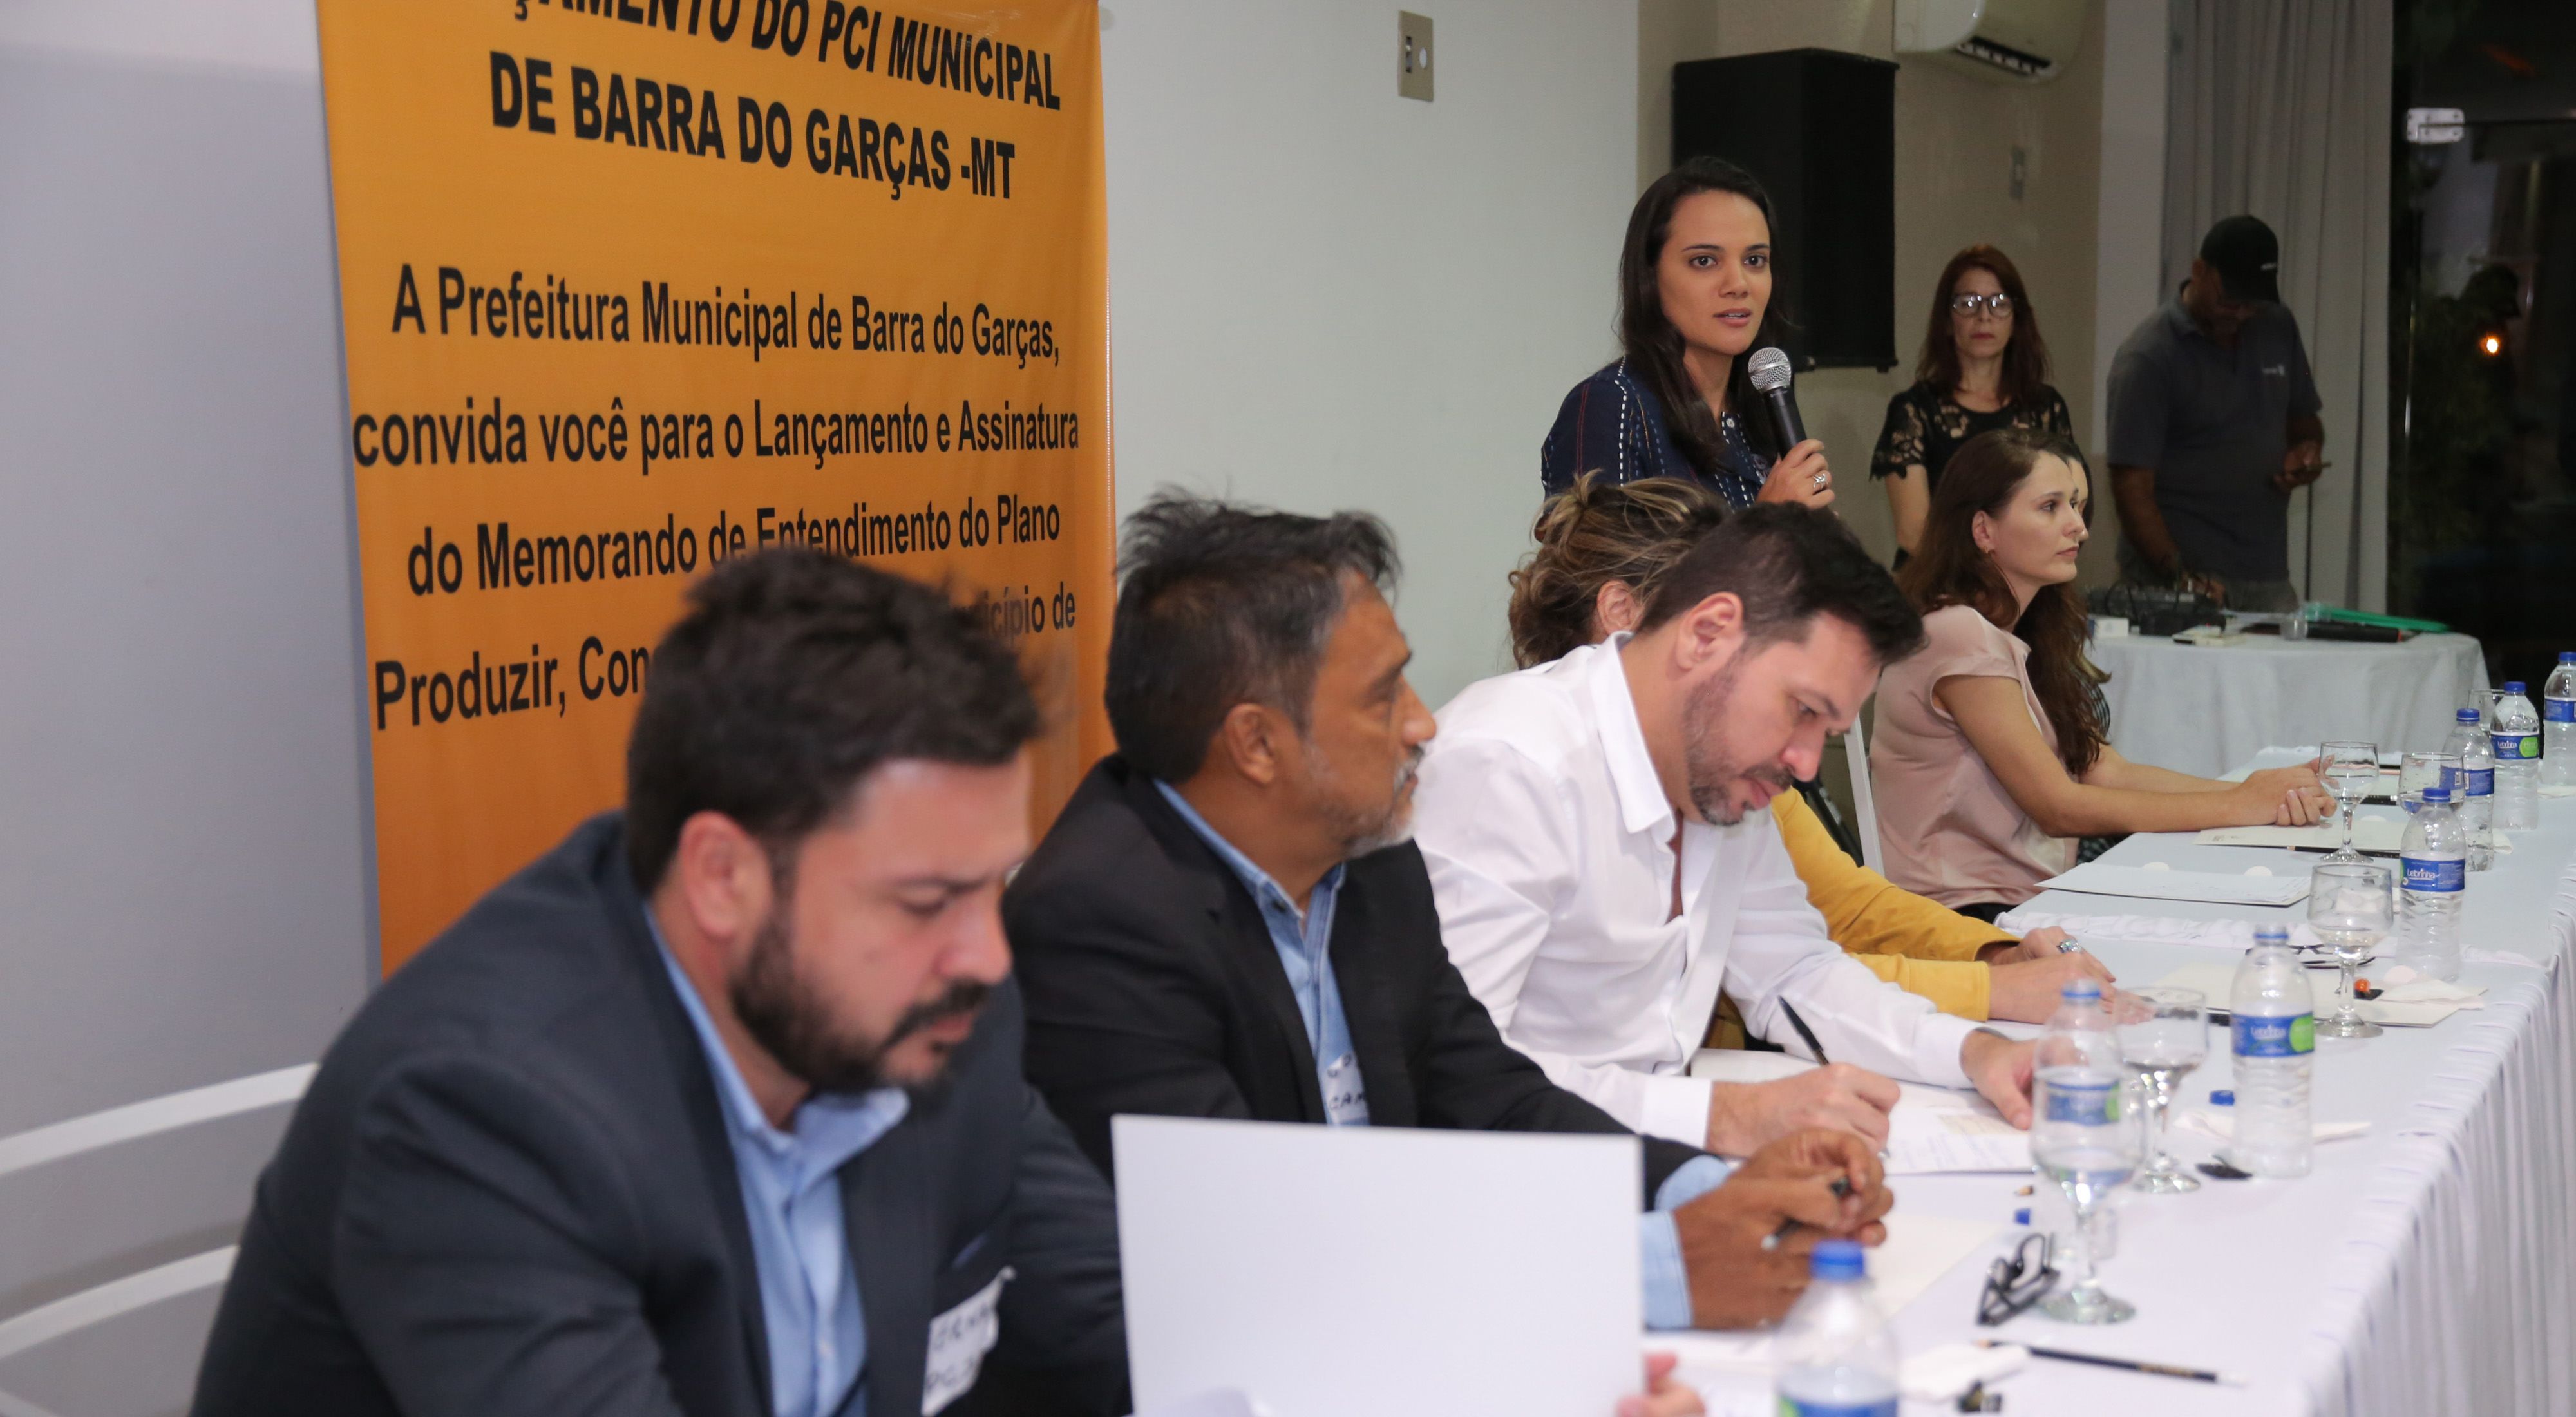 Julia Mangueira, Coordenadora regional da TNC no Mato Grosso, fala durante evento de assinatura do PCI de Barra do Garças-MT.